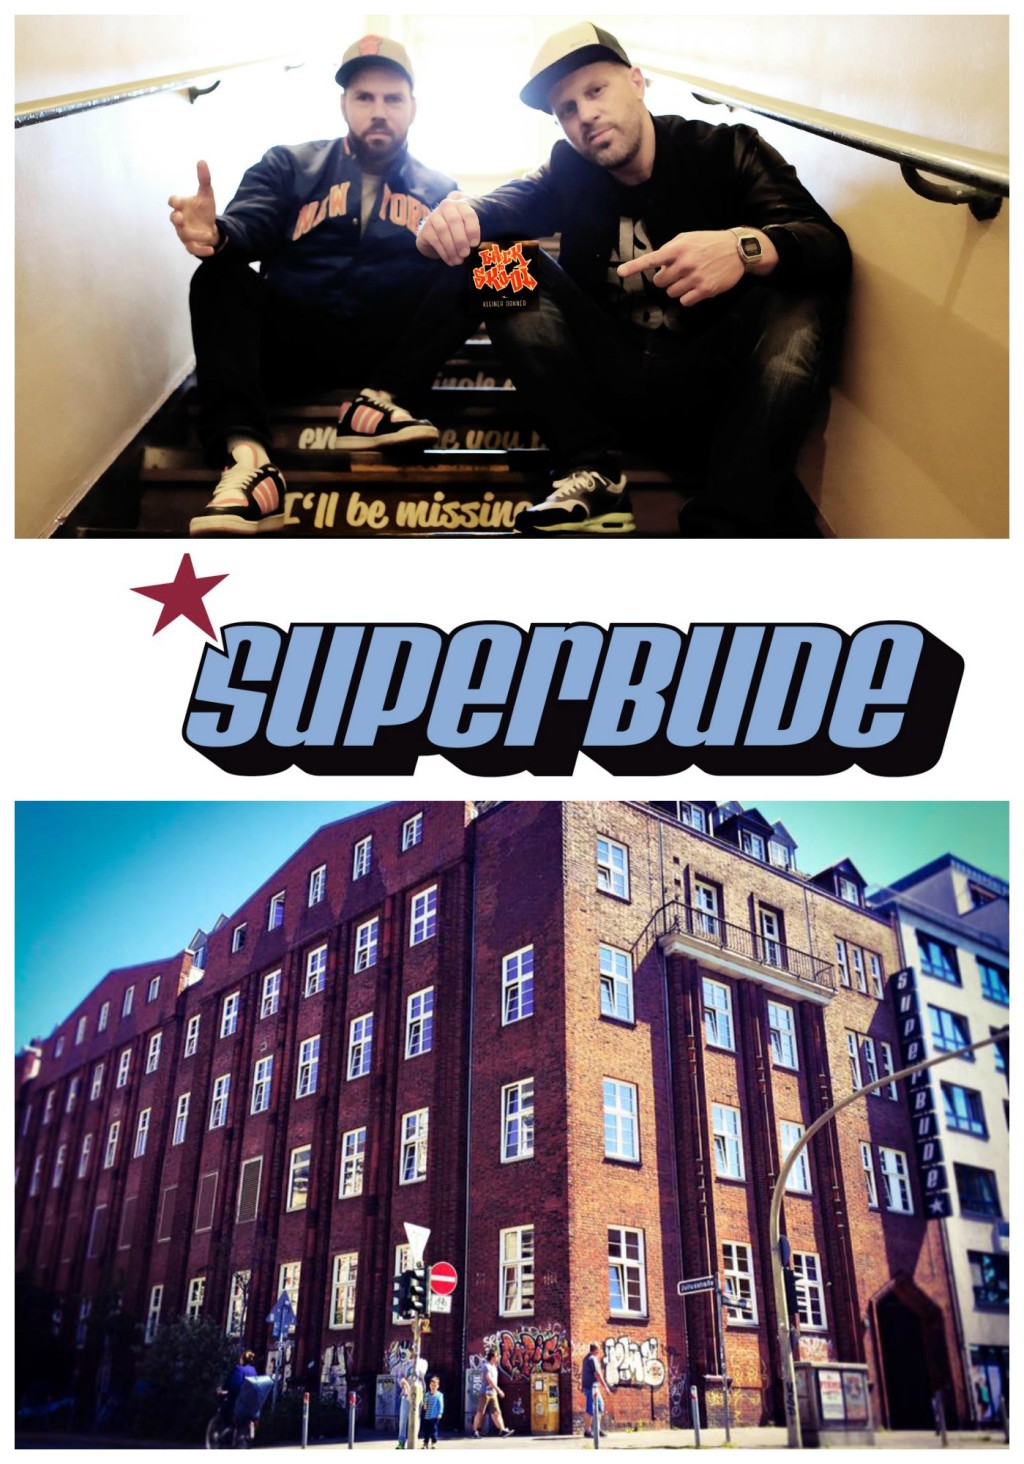 Beats in der Bude! Die Superbude hat das DJ Pult wiedergefunden! Um es zu entstauben haben sie sich Plattenmayer und Naughty NMX aus dem Back To Skool Netzwerk eingeladen! Zu leckeren Getränken und gutem Sound könnt ihr euch hier in Hamburgs größter WG-Küche treffen, um gemeinsam in den Abend zu starten!